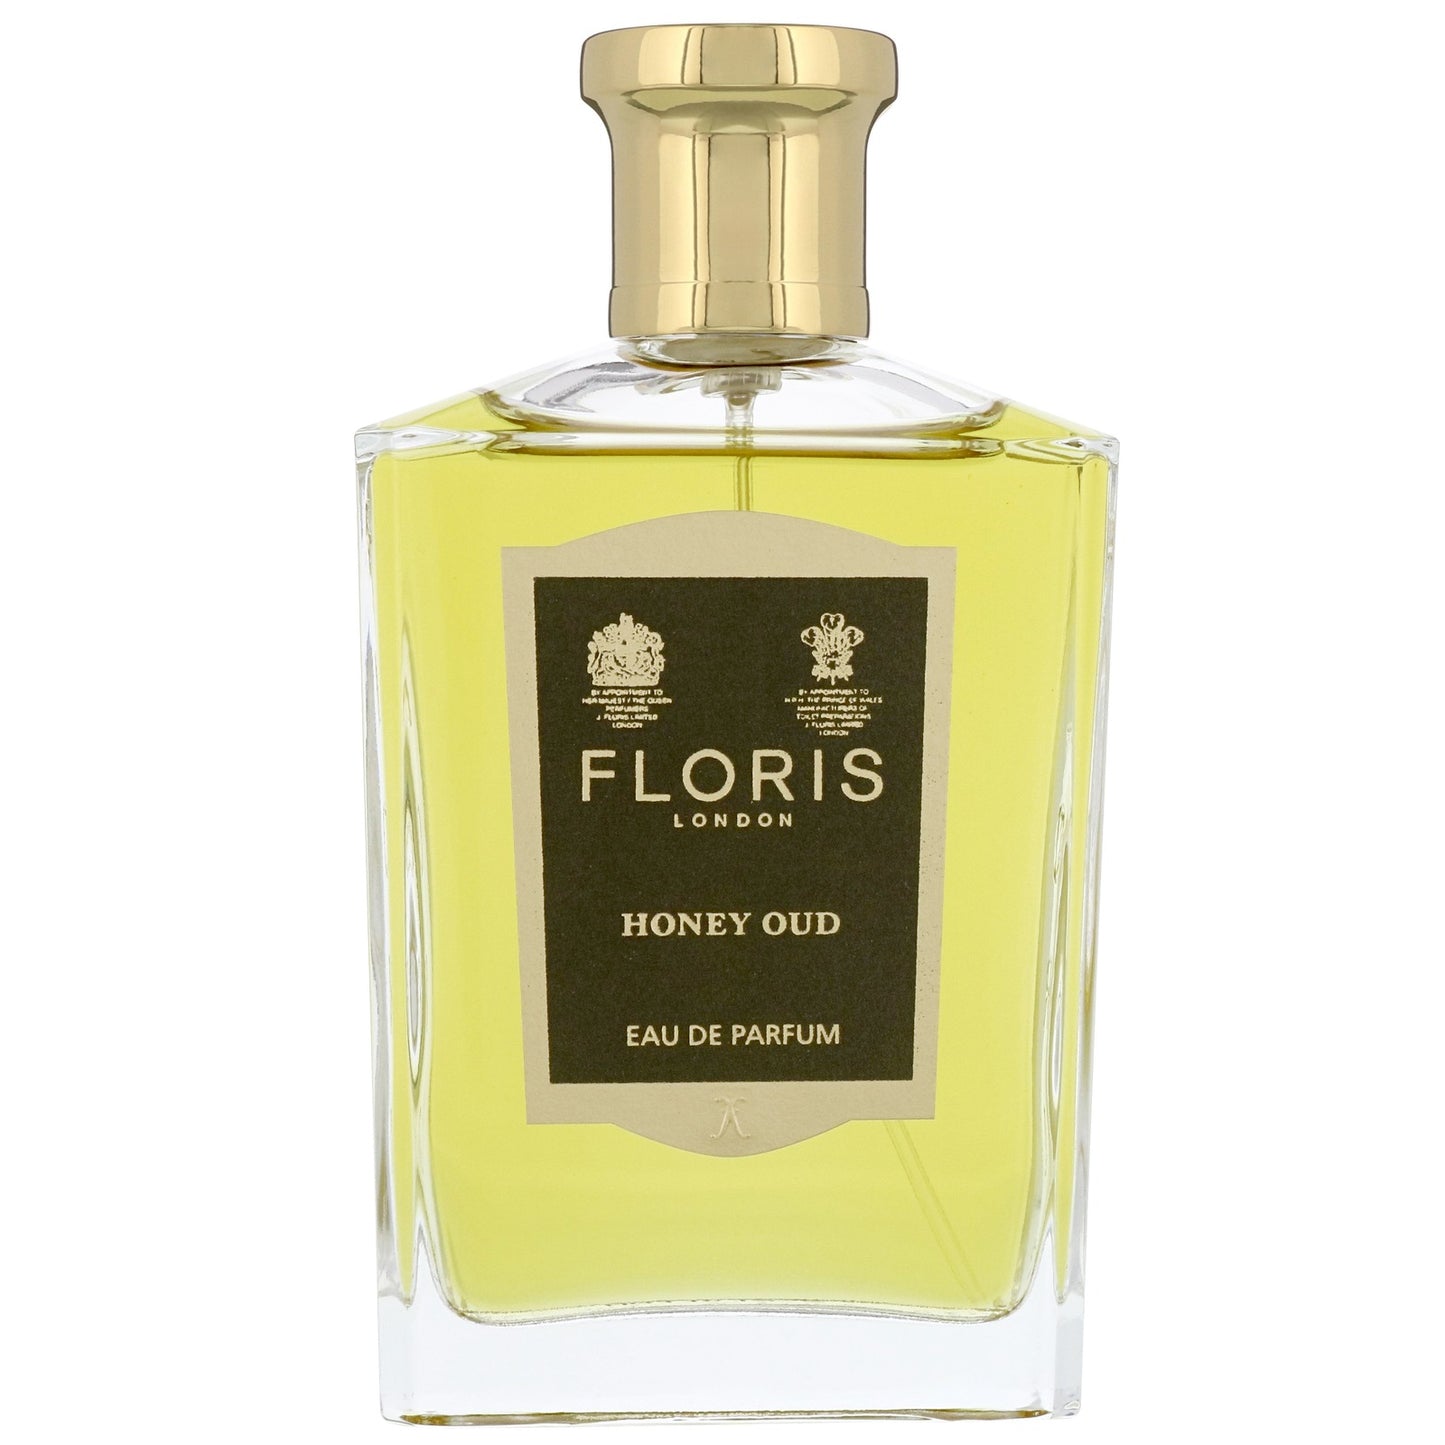 Floris Honey Oud - Eau De Parfum 100ml